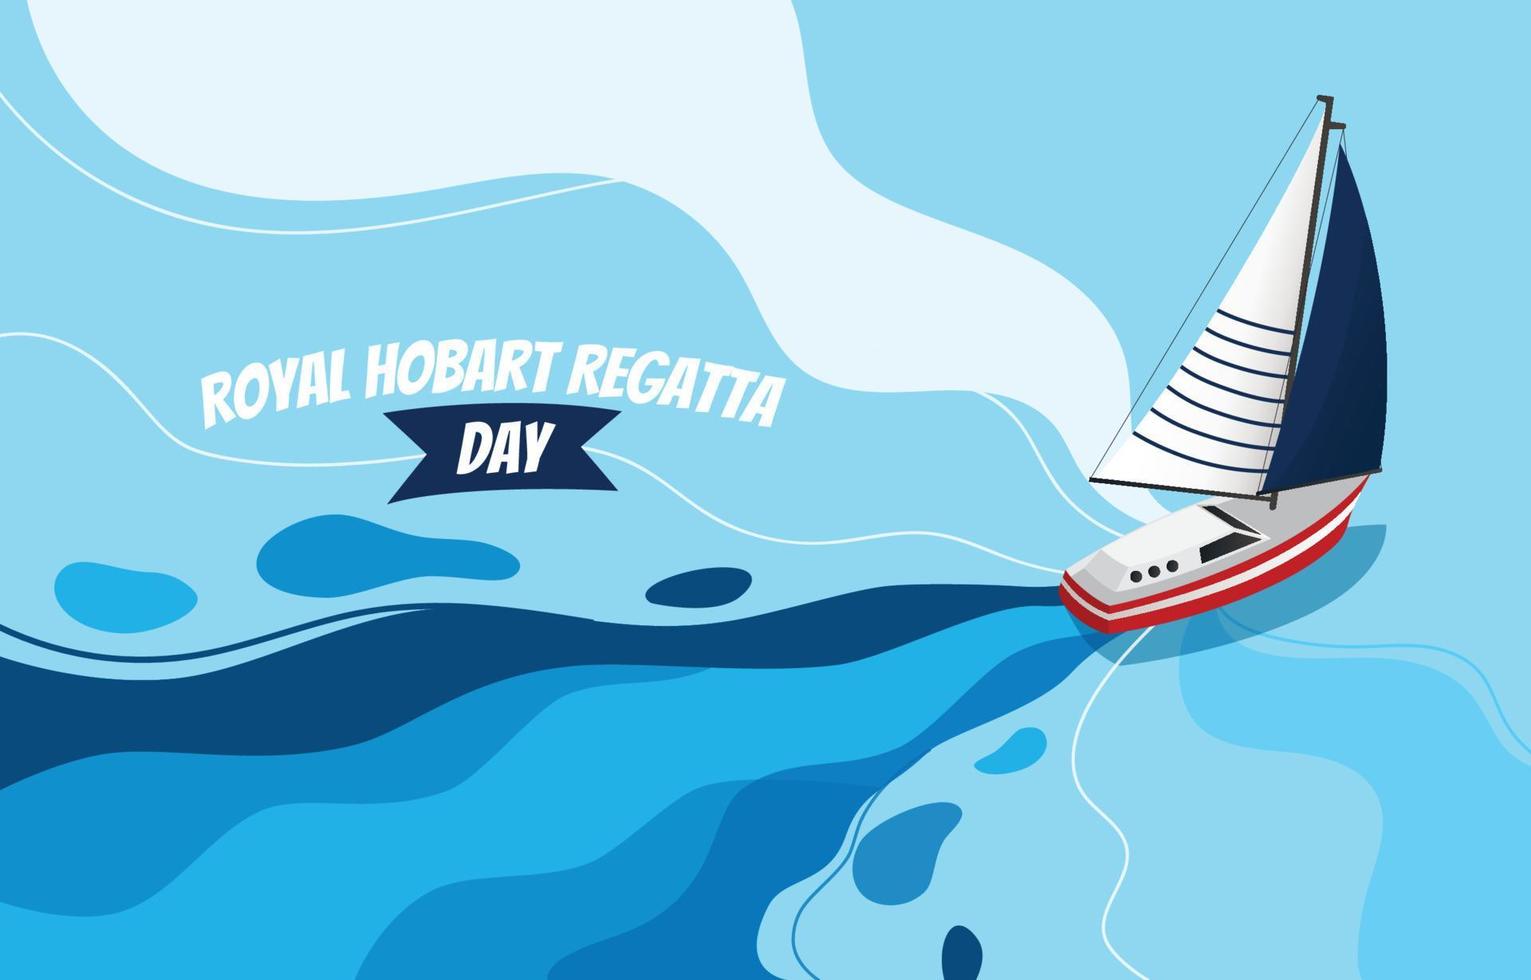 koninklijke hobart regatta dag achtergrond vector